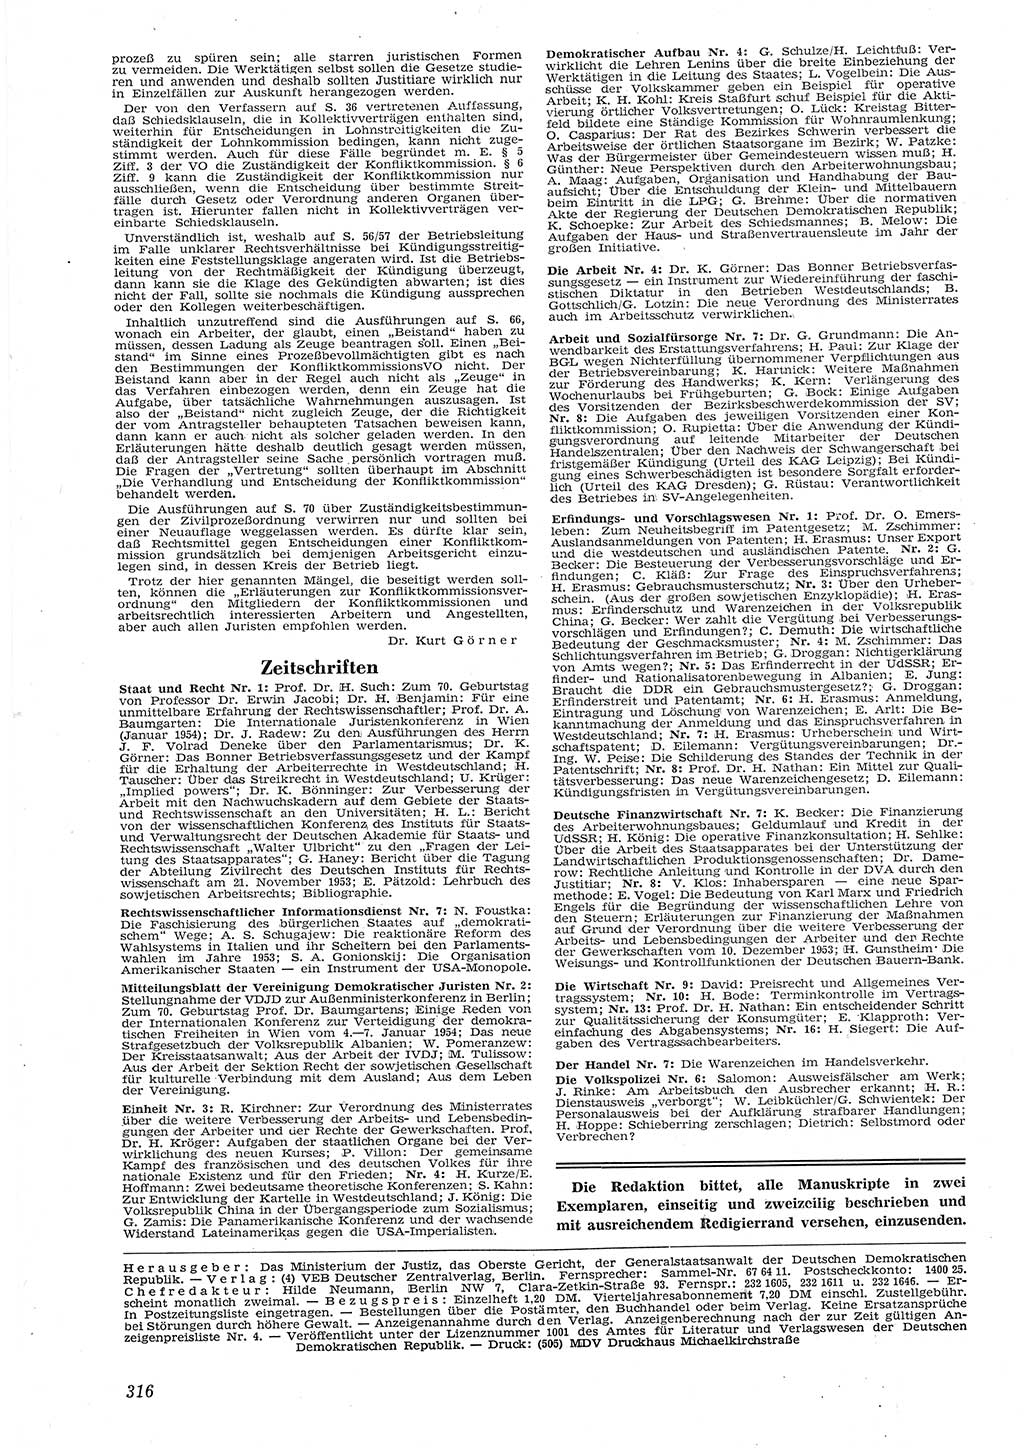 Neue Justiz (NJ), Zeitschrift für Recht und Rechtswissenschaft [Deutsche Demokratische Republik (DDR)], 8. Jahrgang 1954, Seite 316 (NJ DDR 1954, S. 316)